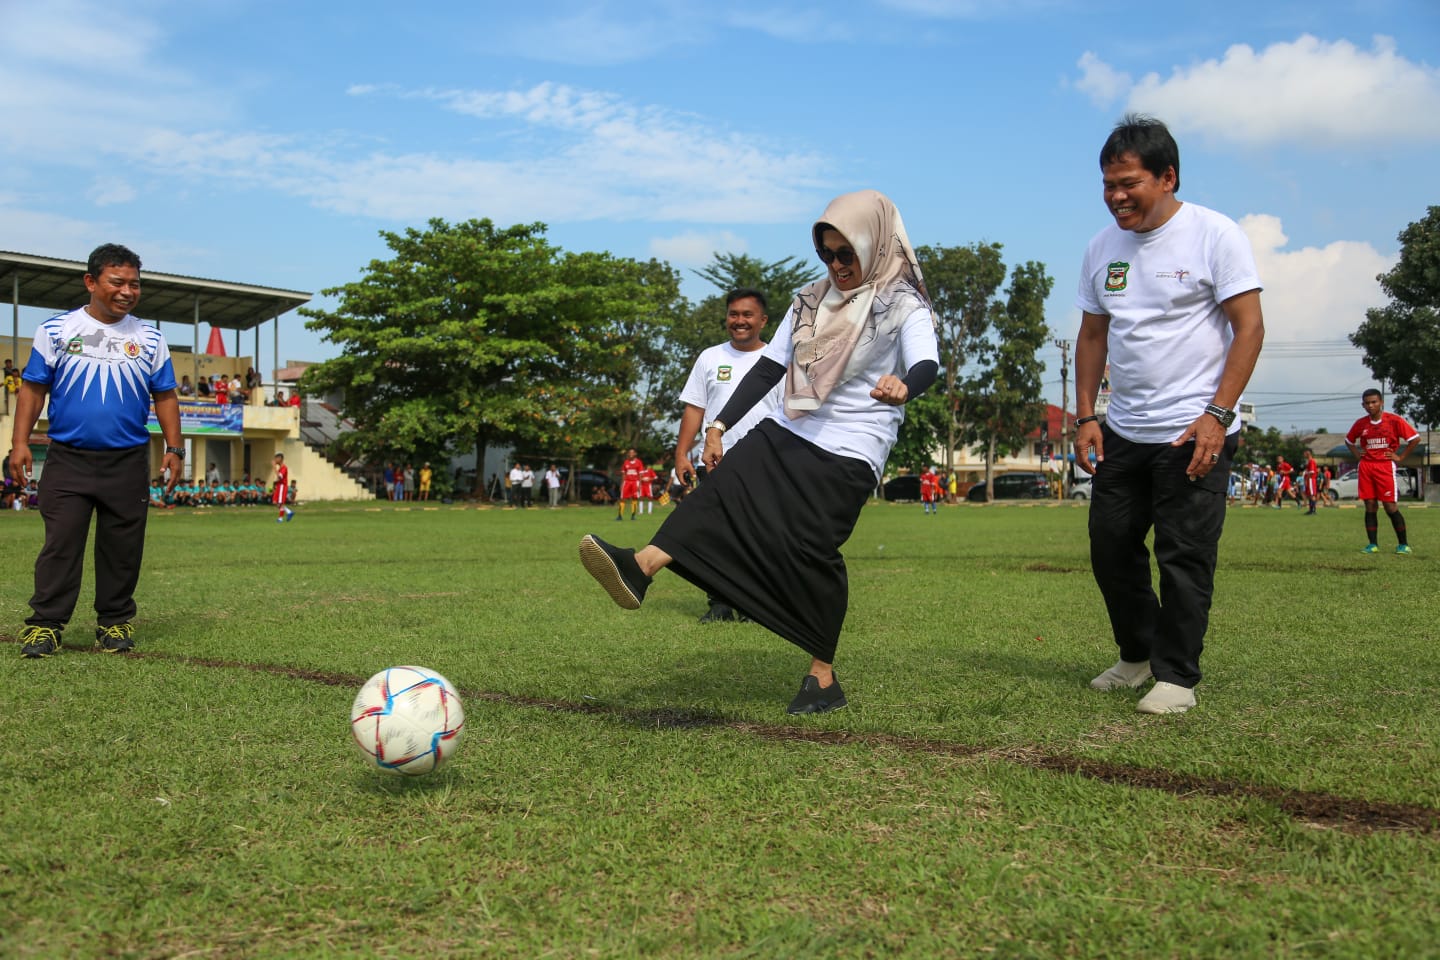 Wali Kota Siantar Menggelar Kick Off Wali Kota Cup Tahun 2023 untuk Memupuk Semangat Olahraga dan Persatuan di Kalangan Pelajar